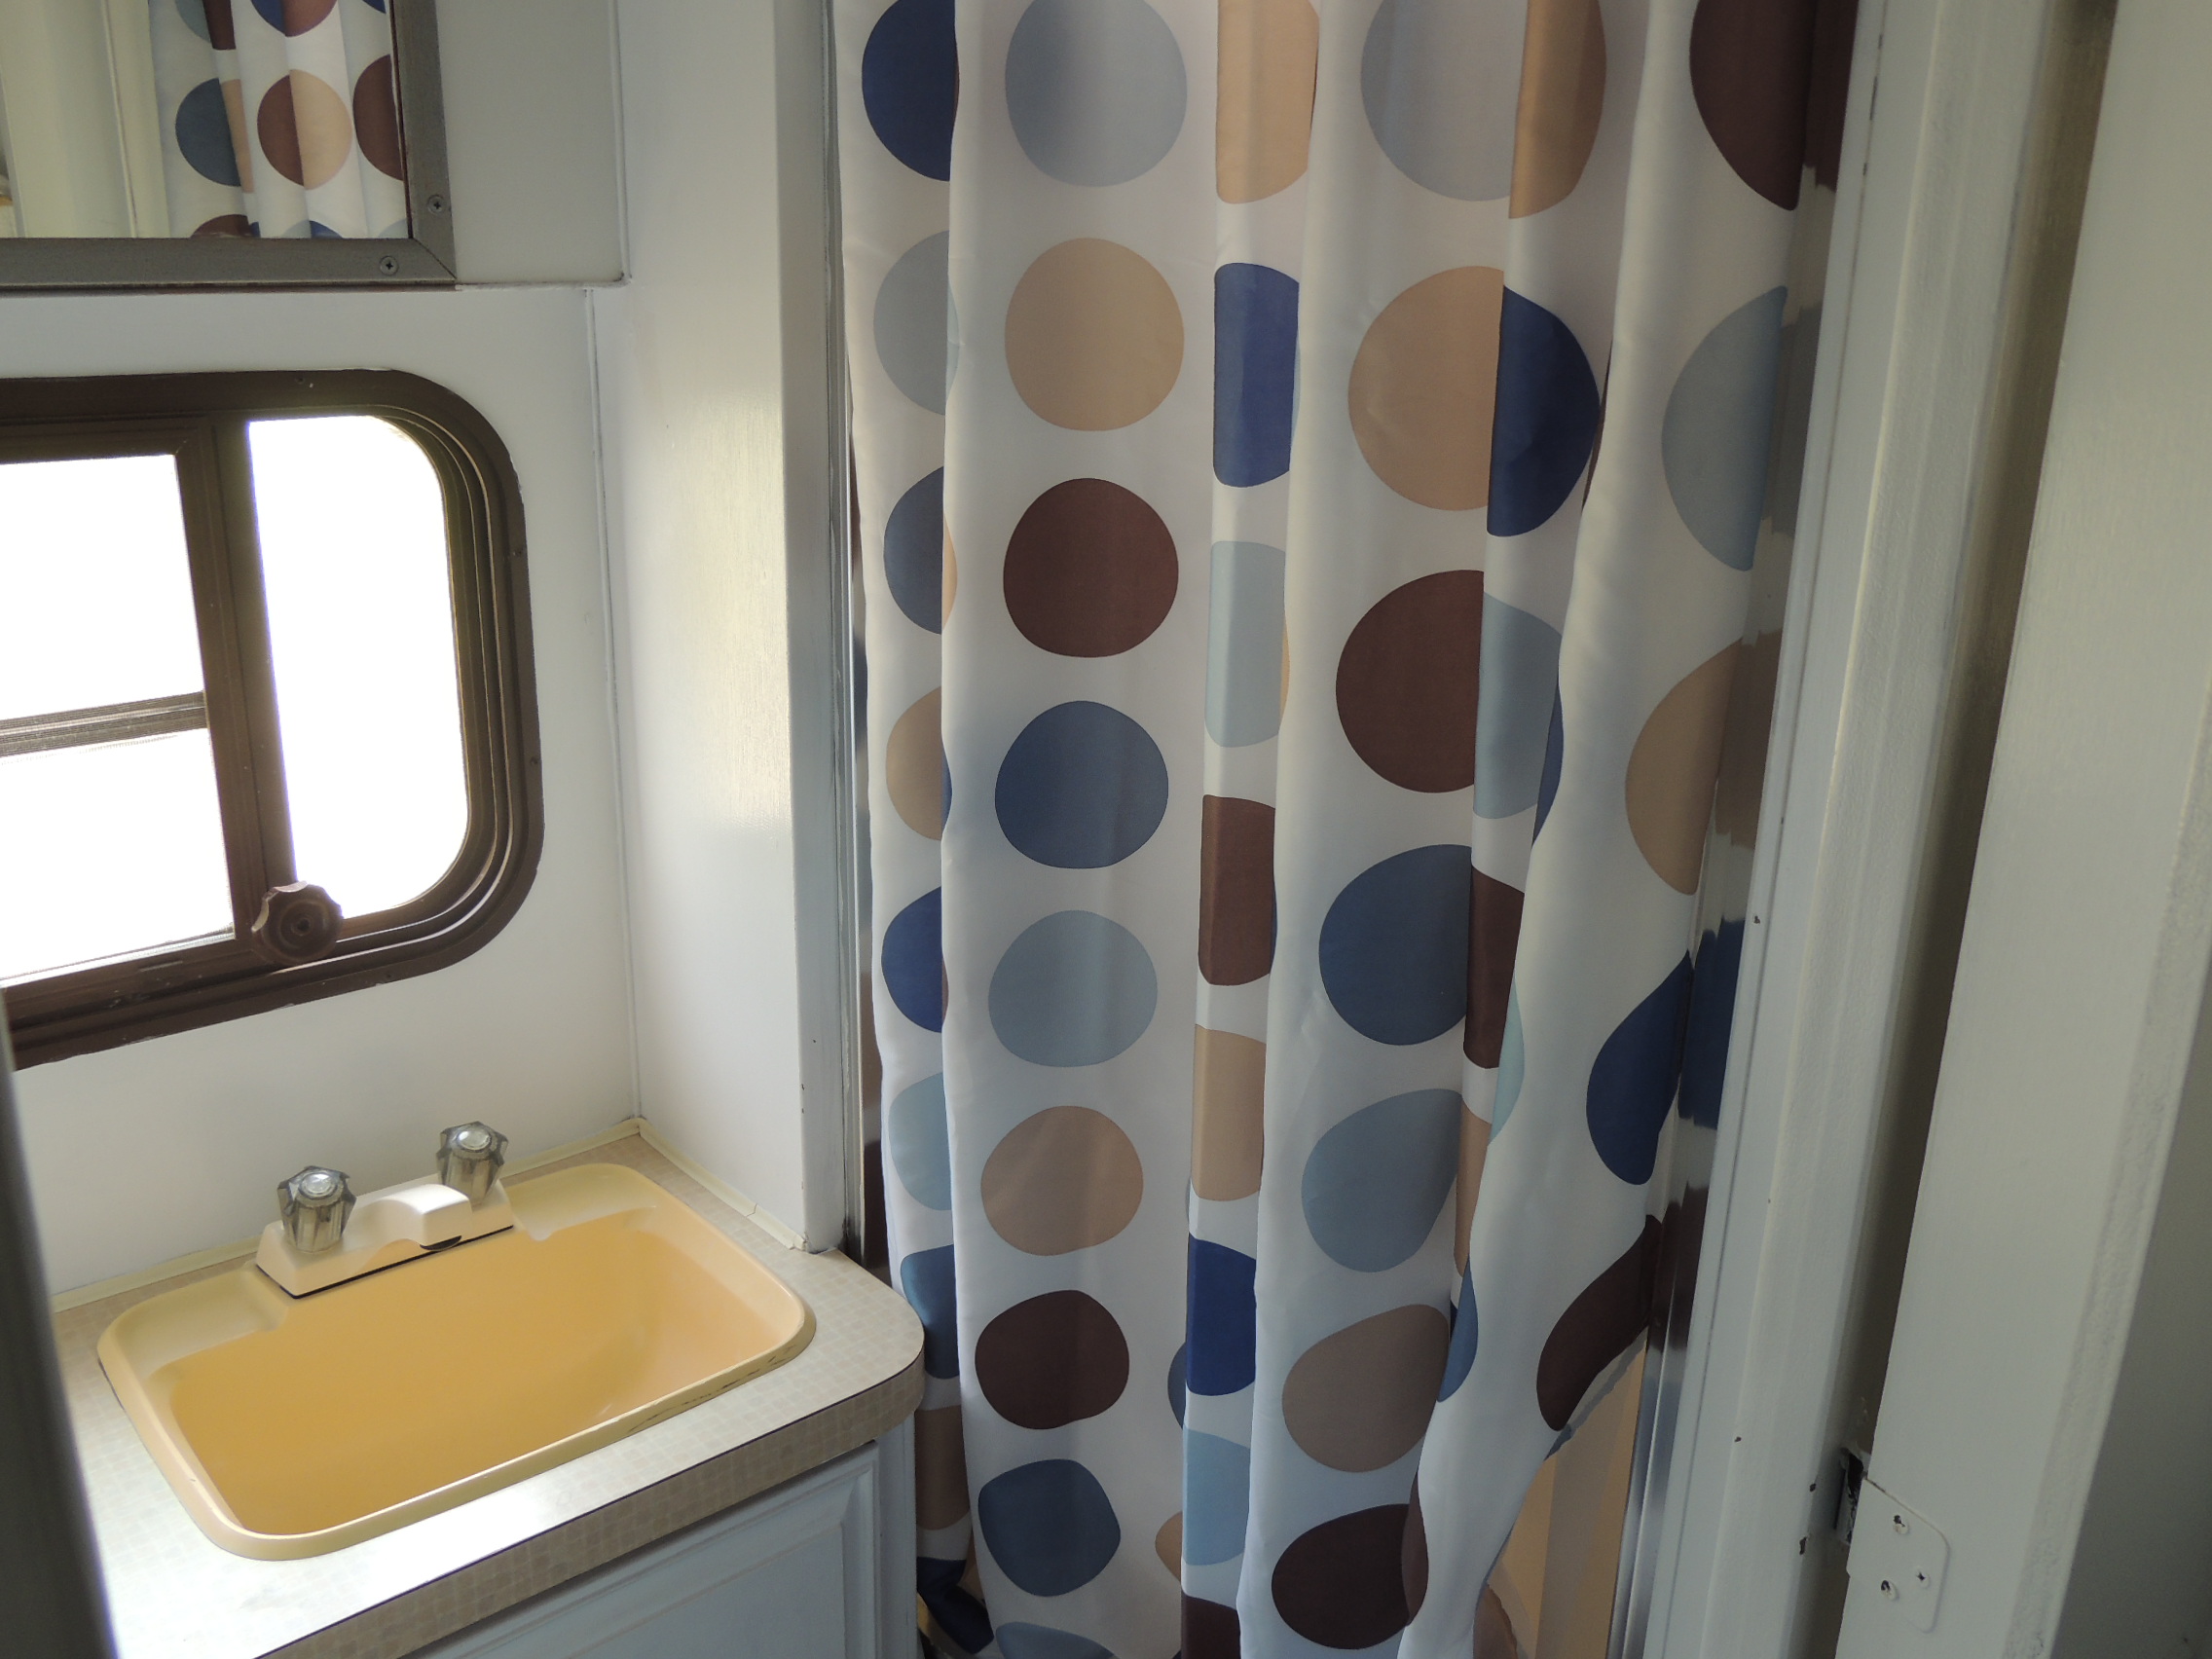 Retro trailer interior view of the private shower